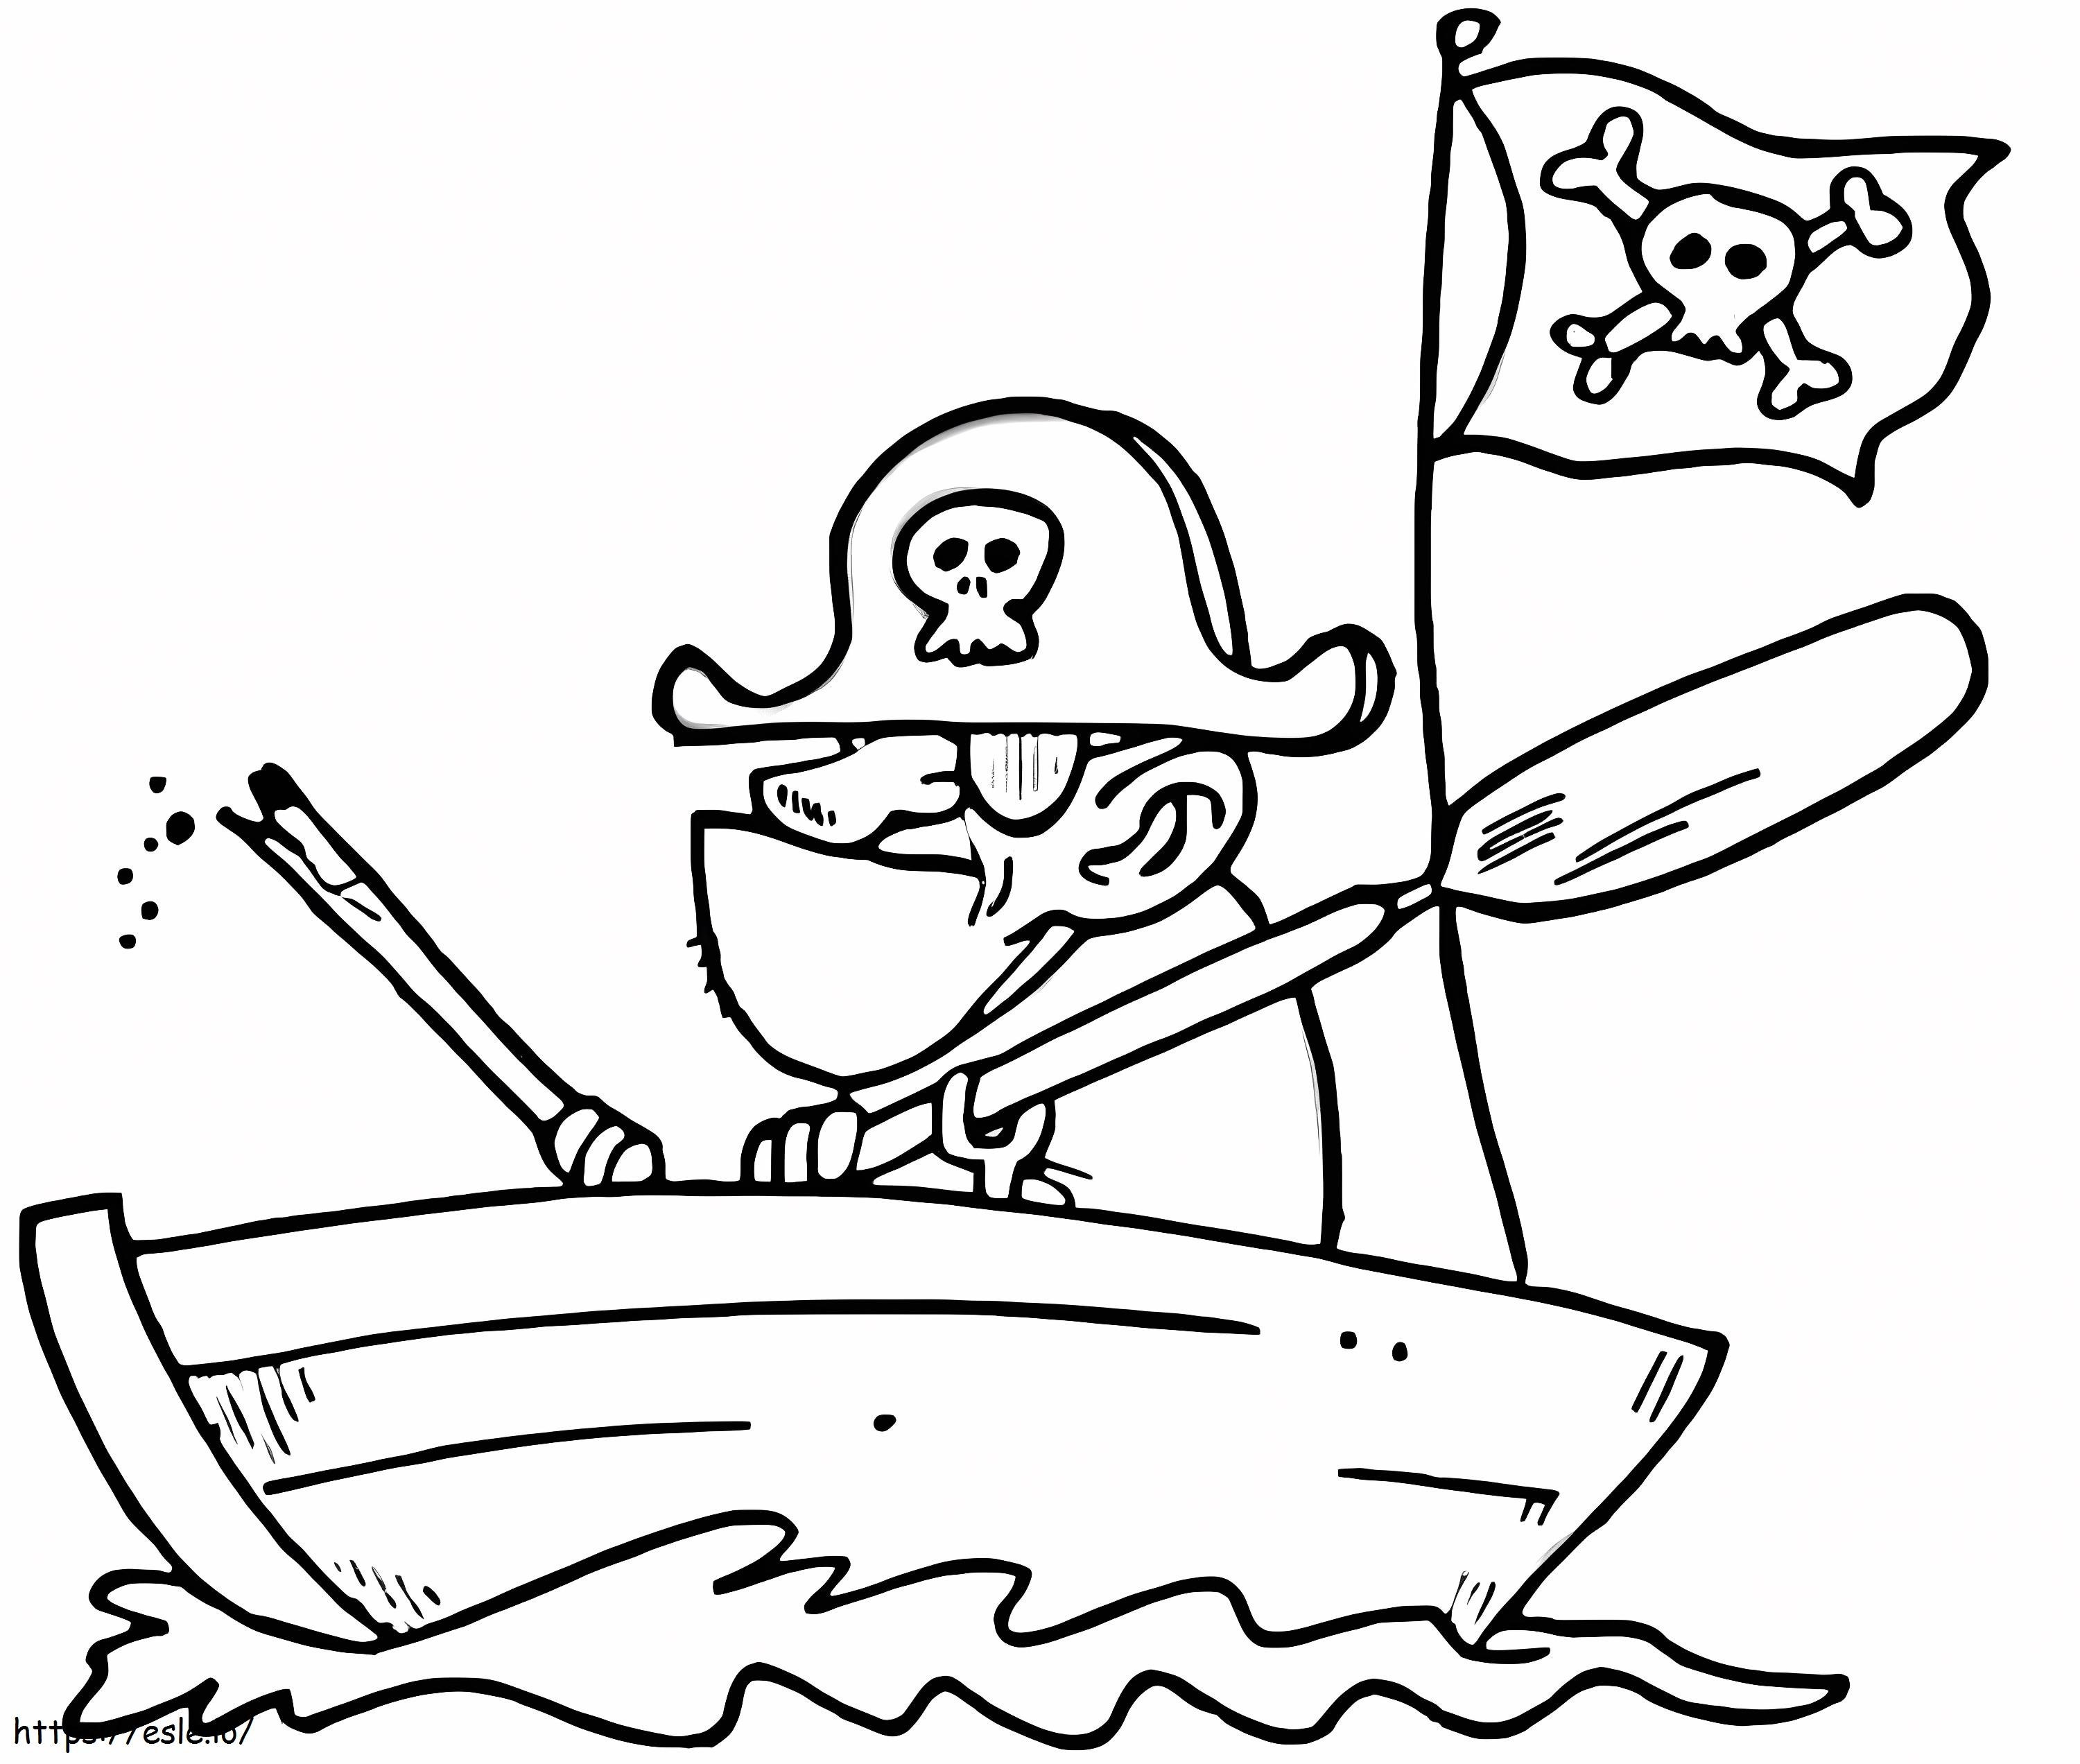 Piratenboot kleurplaat kleurplaat